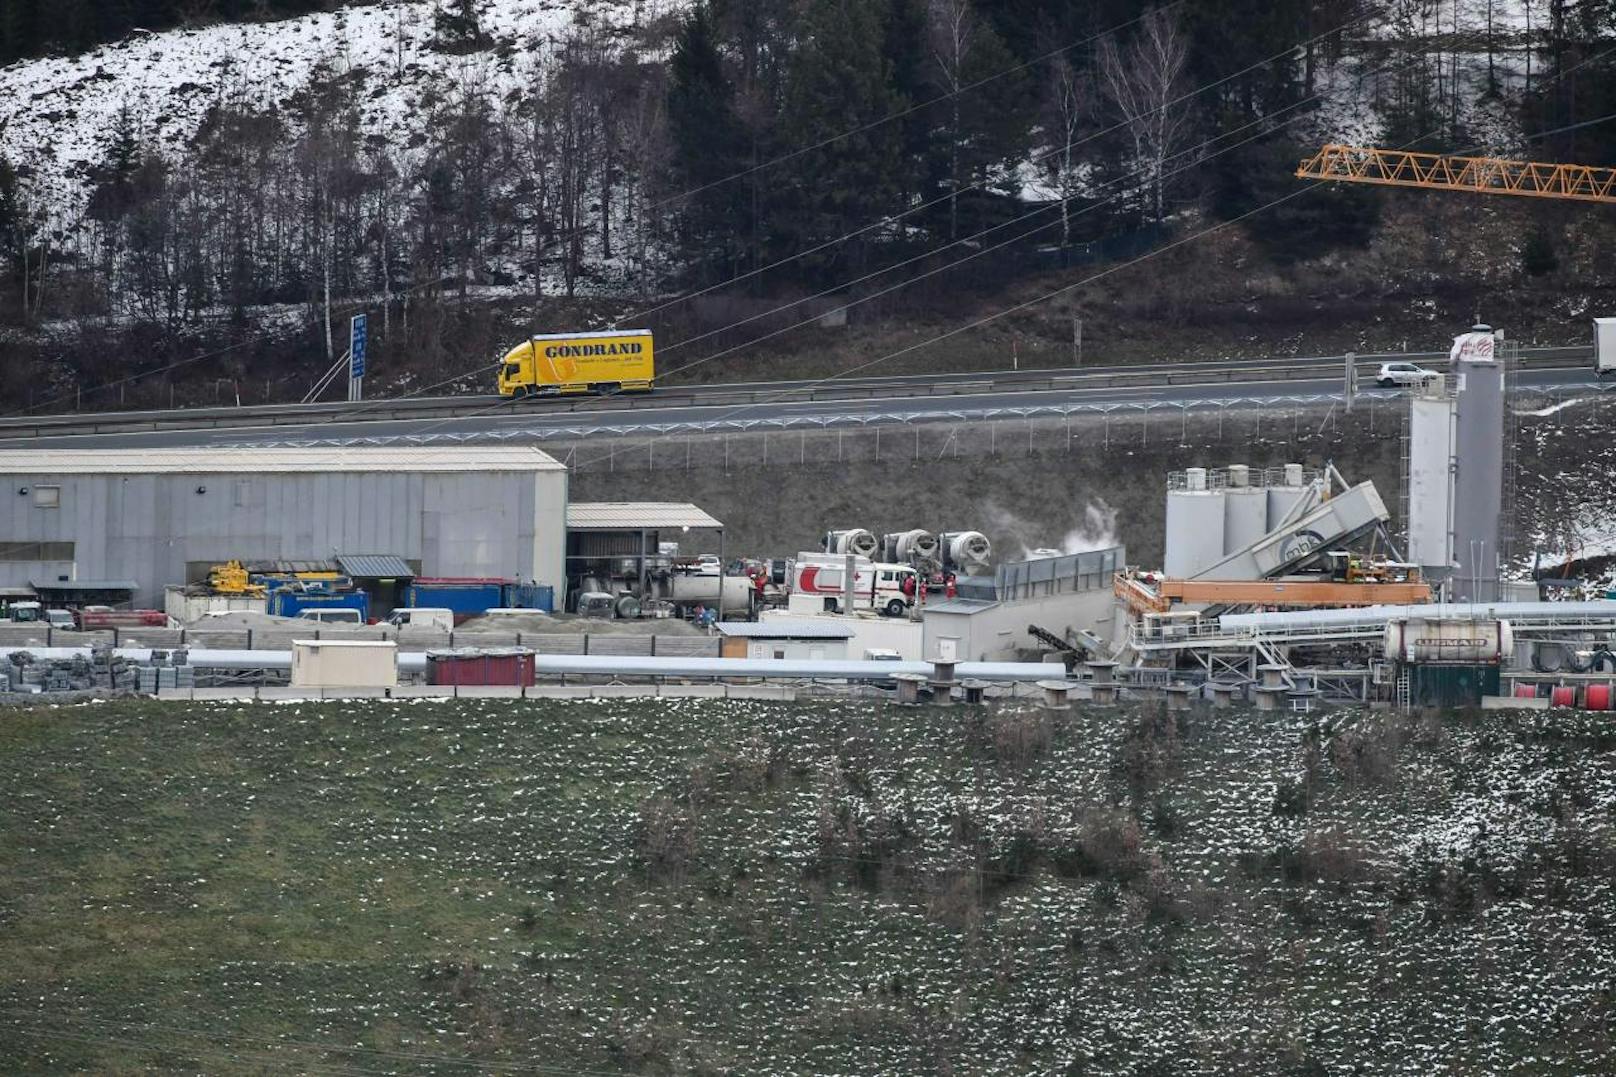 Zum Zeitpunkt des Brandes sollen sich rund 50 Arbeiter im Brennerbasistunnel befunden haben. Zu 18 gab es offenbar zunächst keinen Kontakt.